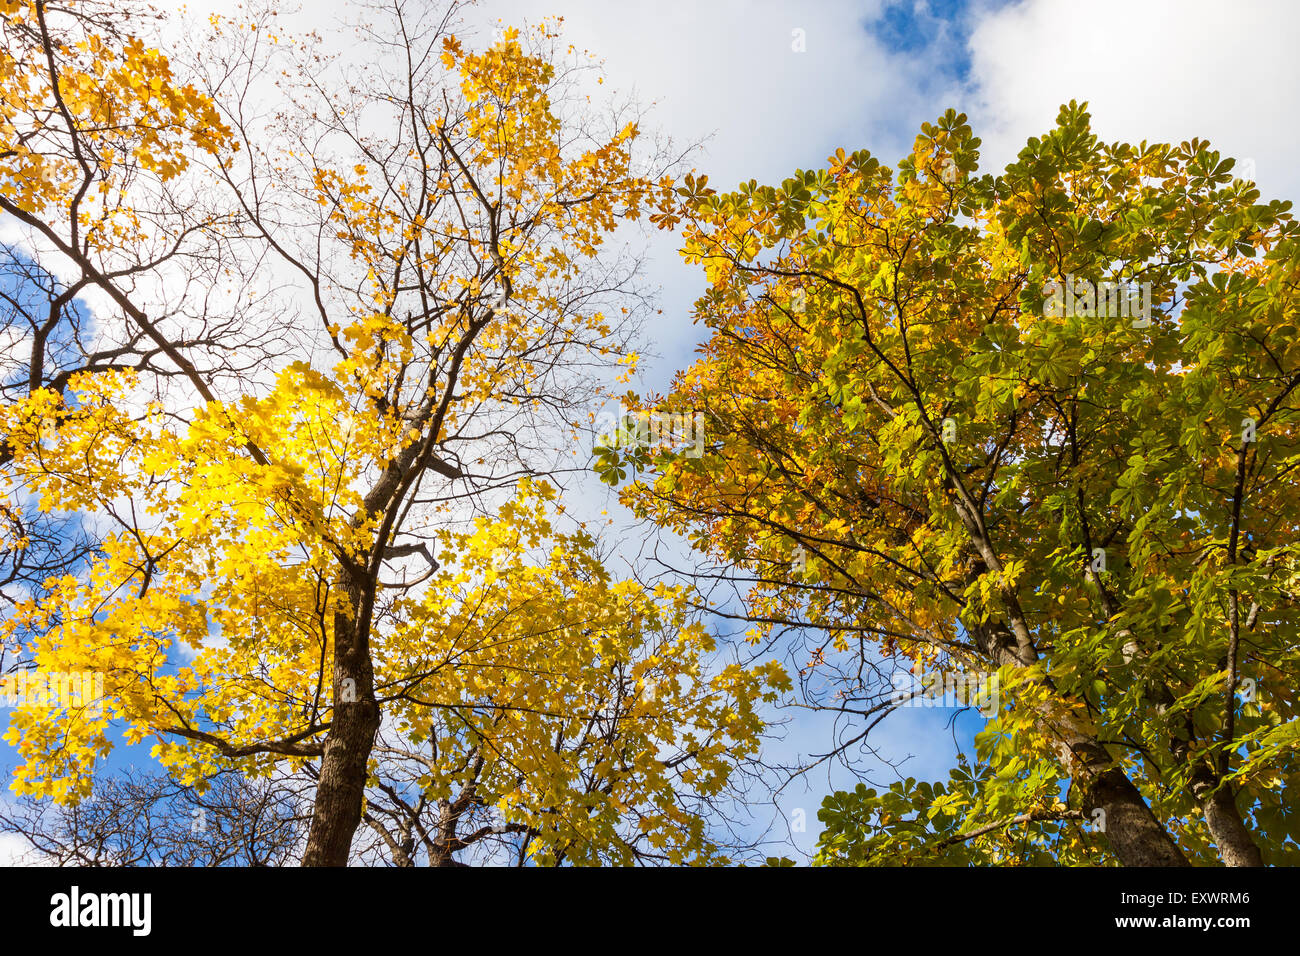 Caen las hojas de los árboles de arce en un cielo azul con nubes blancas Foto de stock